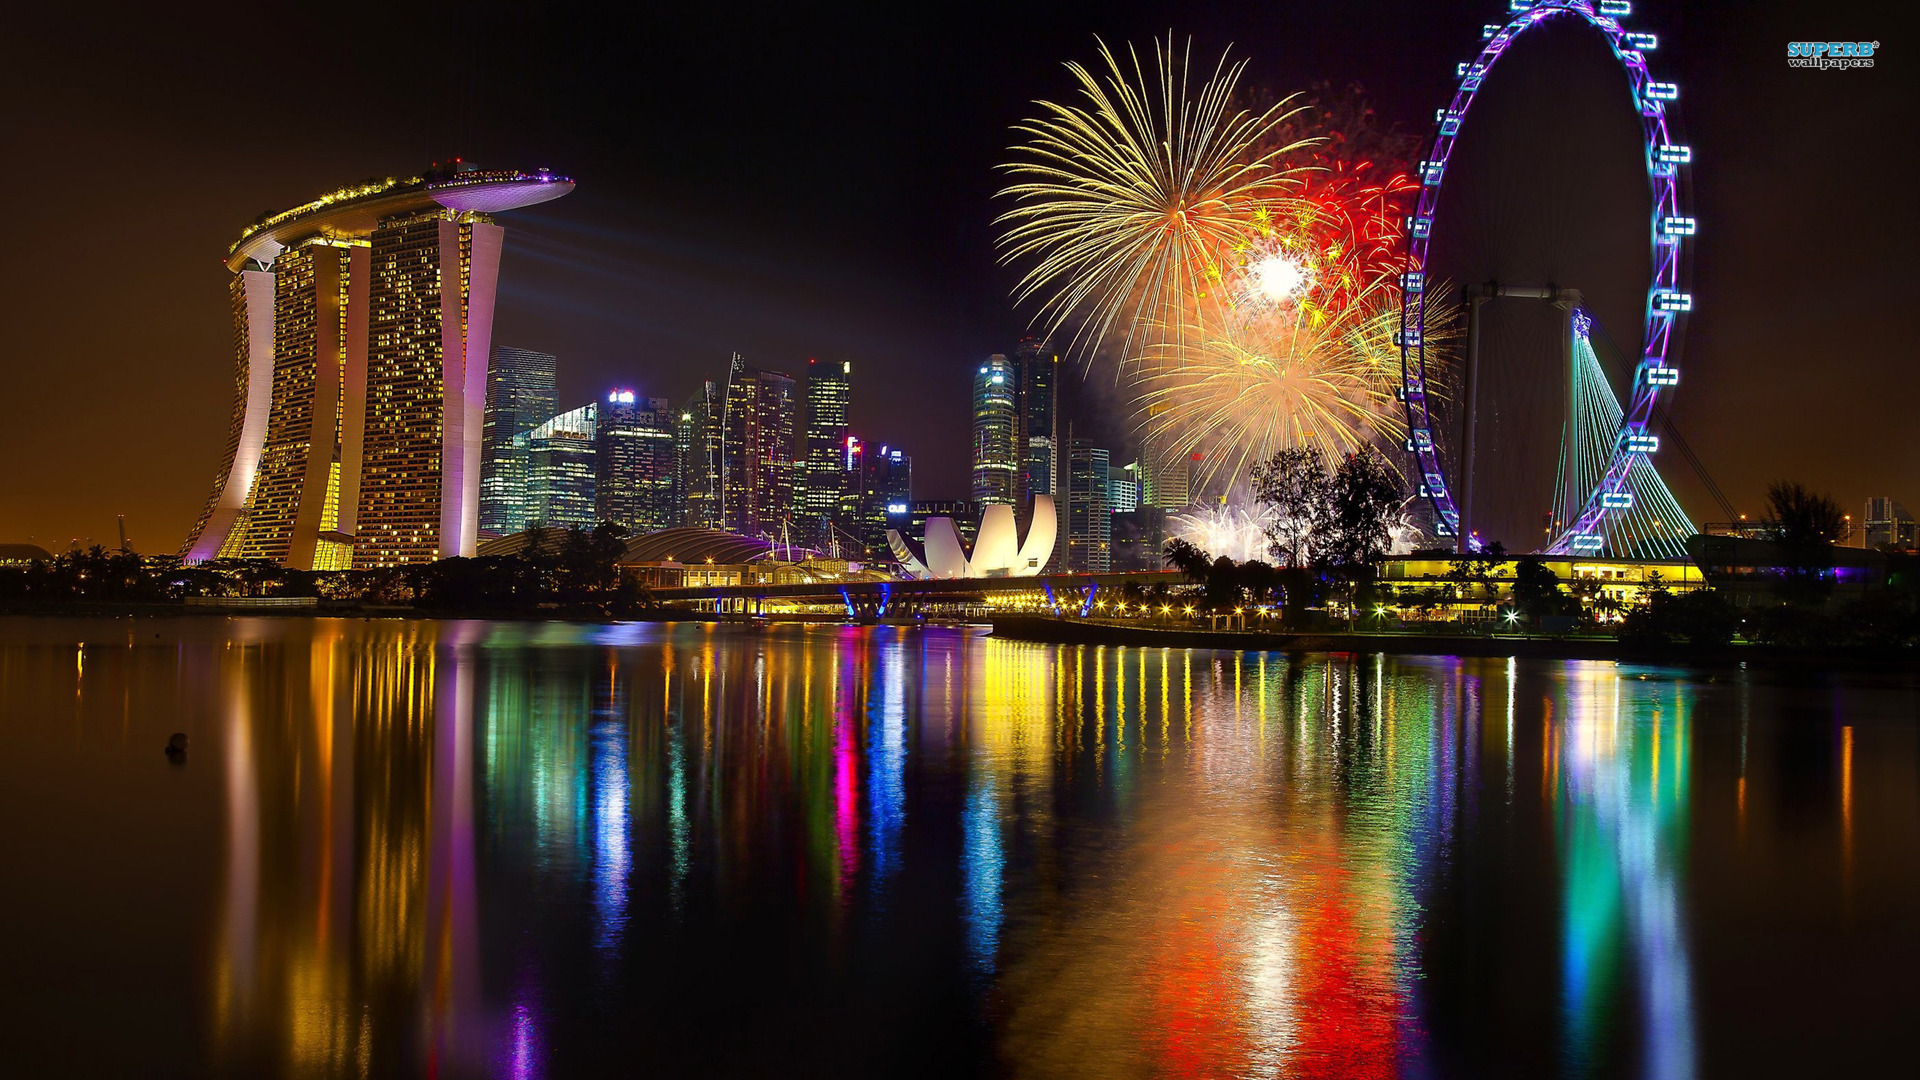 singapour images fond d'écran,réflexion,paysage urbain,zone métropolitaine,nuit,grande roue